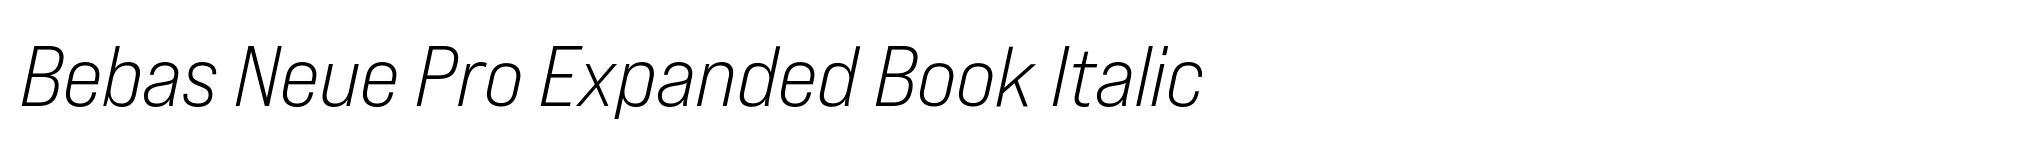 Bebas Neue Pro Expanded Book Italic image